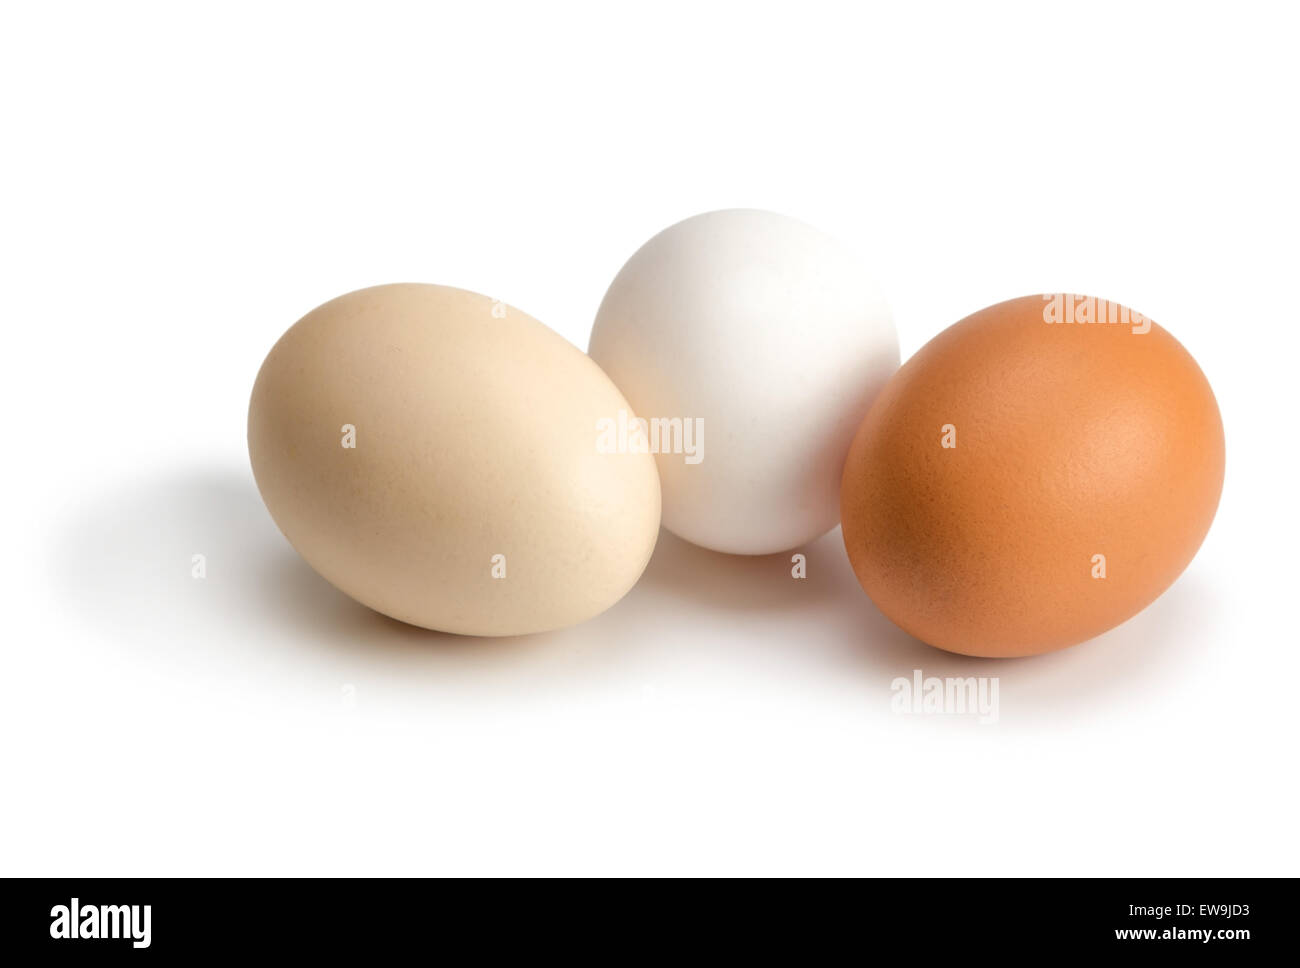 Le uova organiche di colori diversi isolati su sfondo bianco Foto Stock